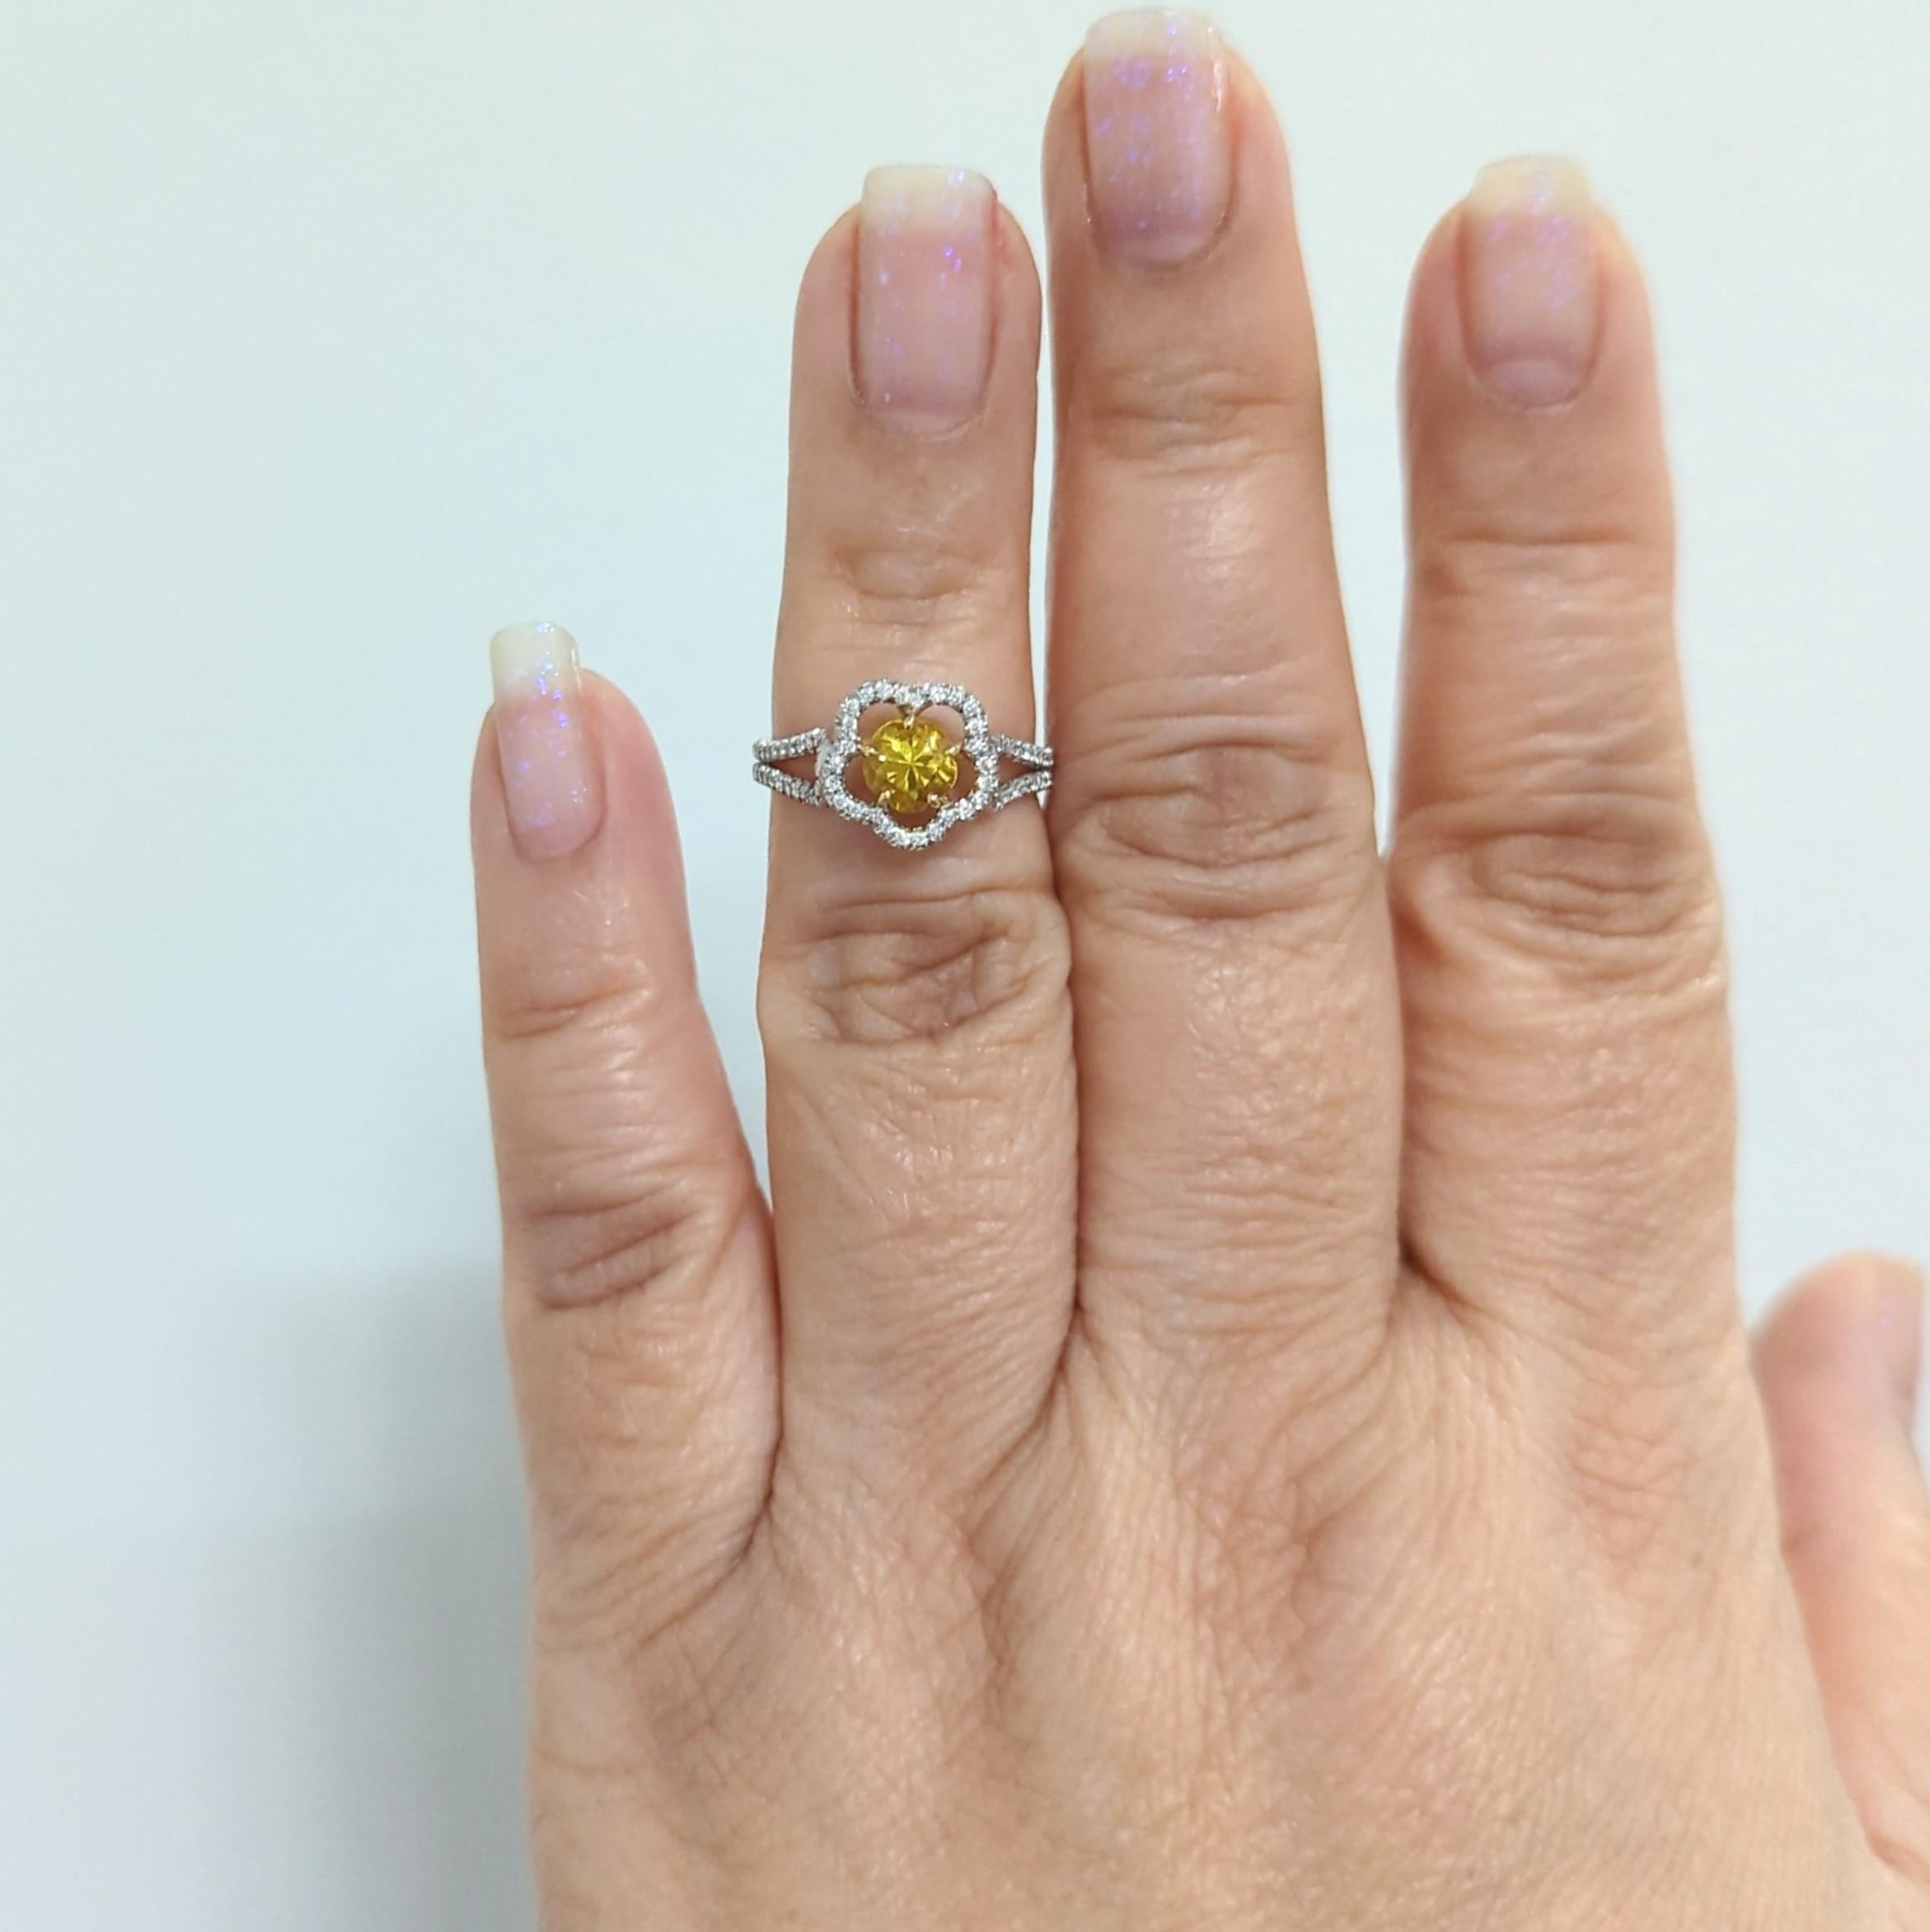 Magnifique saphir jaune brillant rond de 0,88 ct. avec des diamants blancs ronds de bonne qualité de 0,21 ct.  Fabriqué à la main en or jaune et blanc 18 carats.  Bague de taille 6.